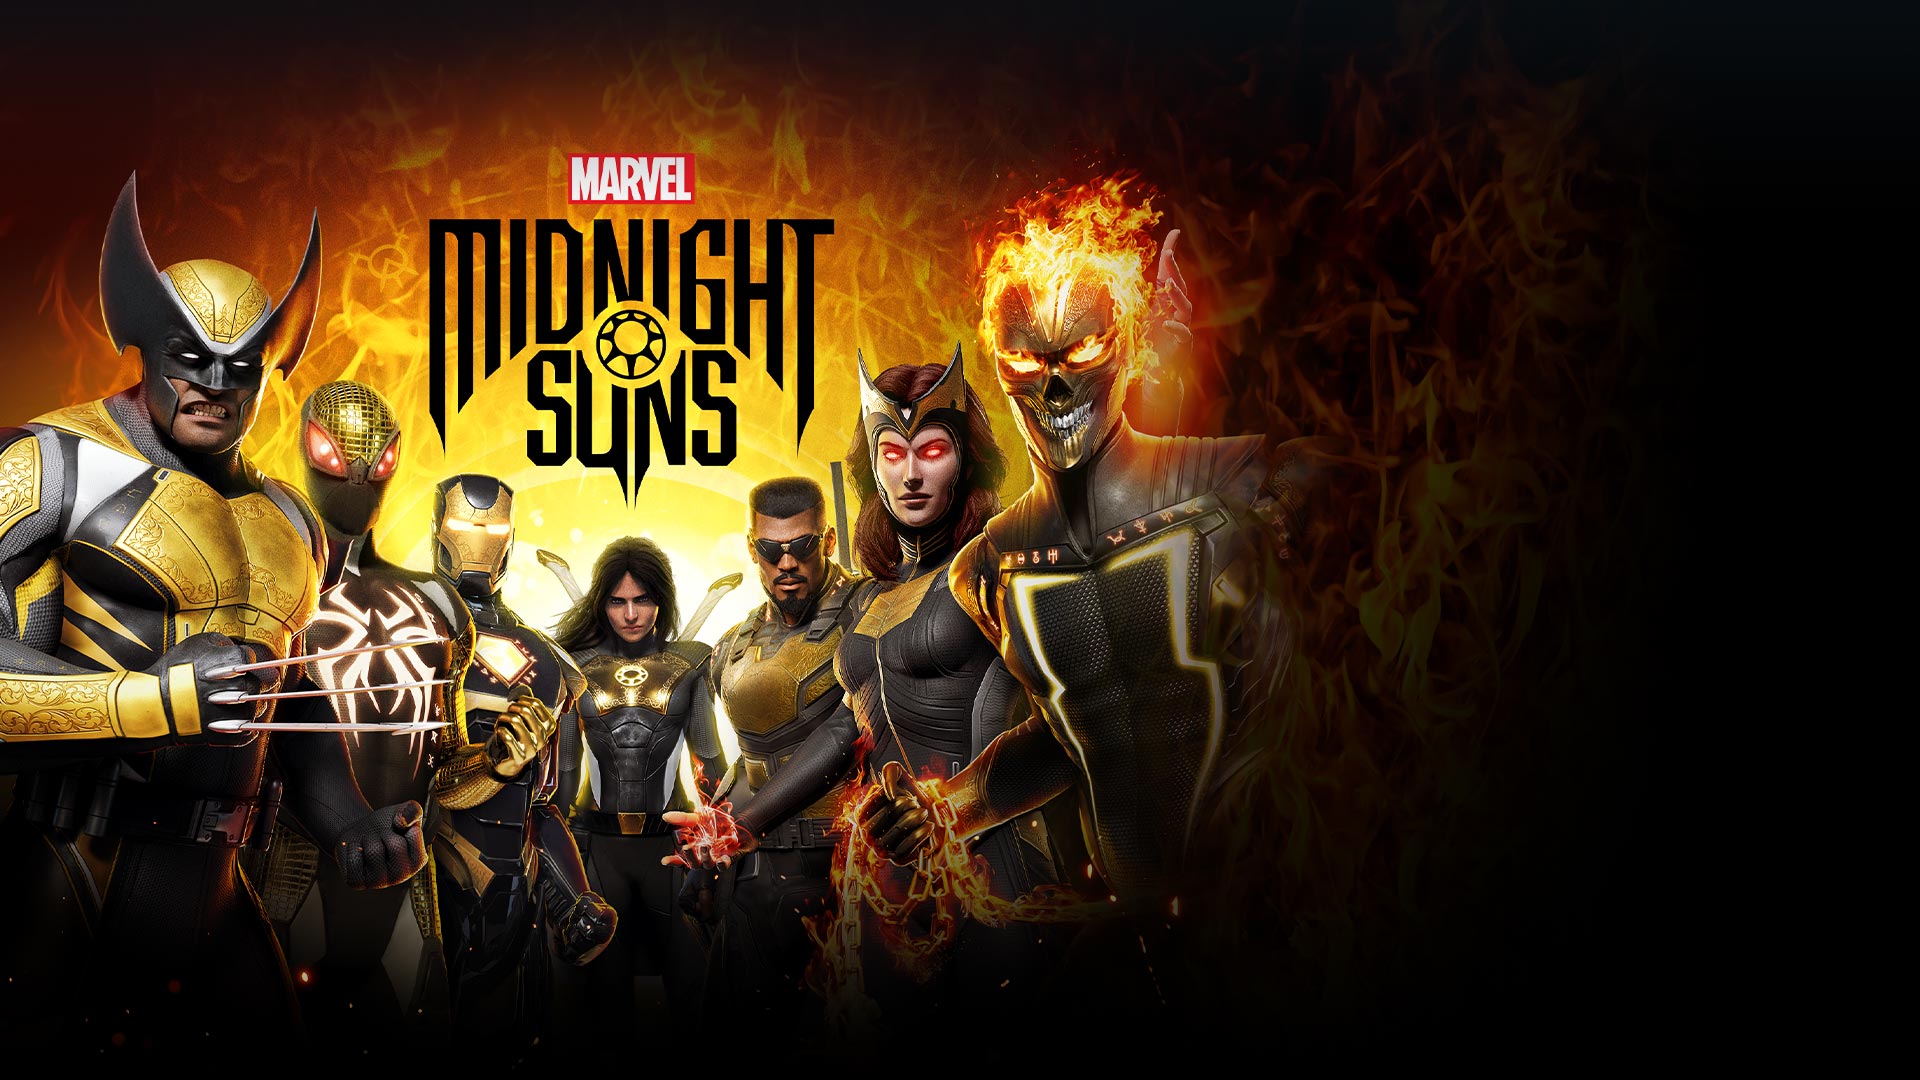 Marvel Midnight Suns, skupina superhrdinů zahrnující Wolverina, Ironmana, Ghost Ridera a Bladea.